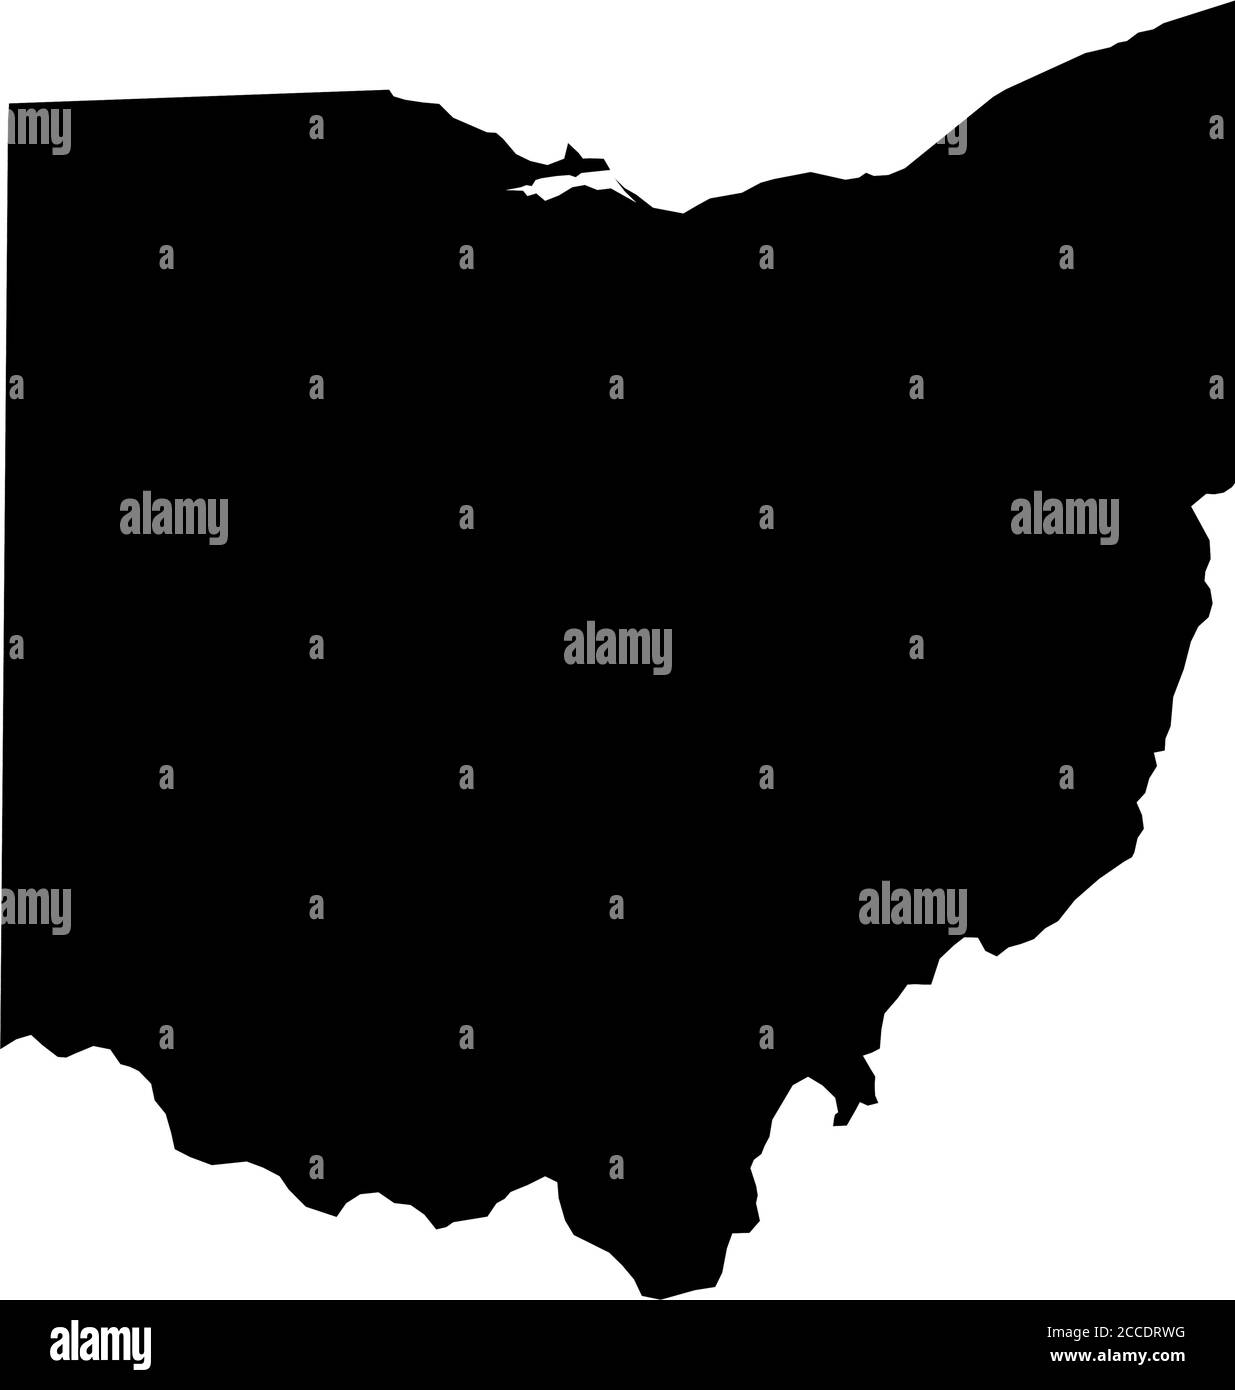 Ohio, État des États-Unis - carte de silhouette noire unie de la région du pays. Illustration simple à vecteur plat. Illustration de Vecteur